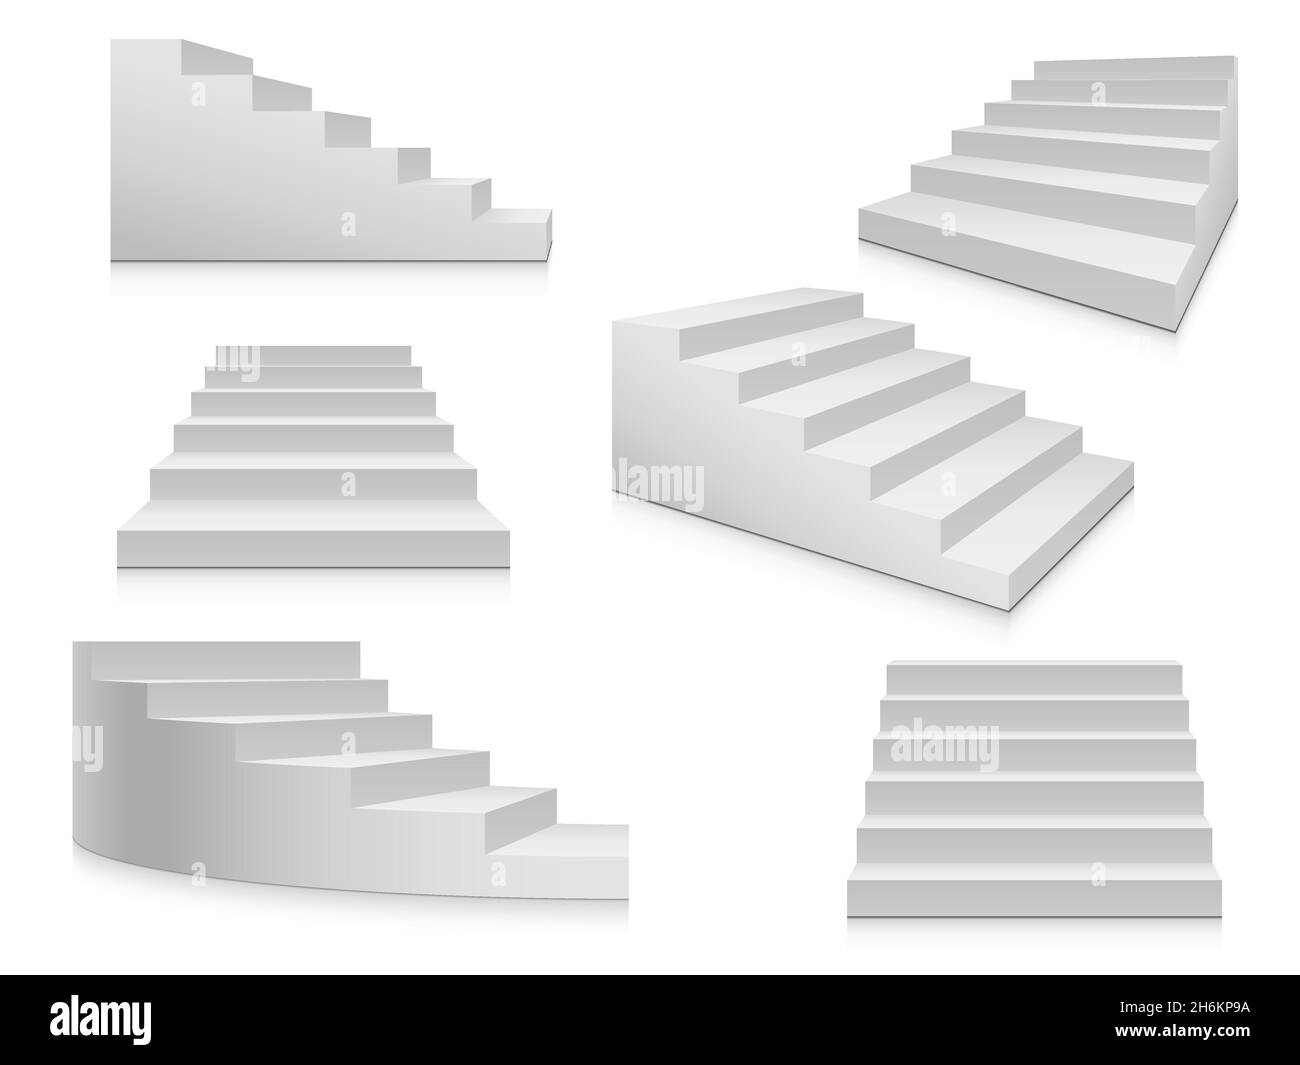 Weiße Treppen. Treppe, 3d-Treppe, Innentreppen isoliert. Treppen Leiter Architektur Element Vektor Sammlung Stock Vektor